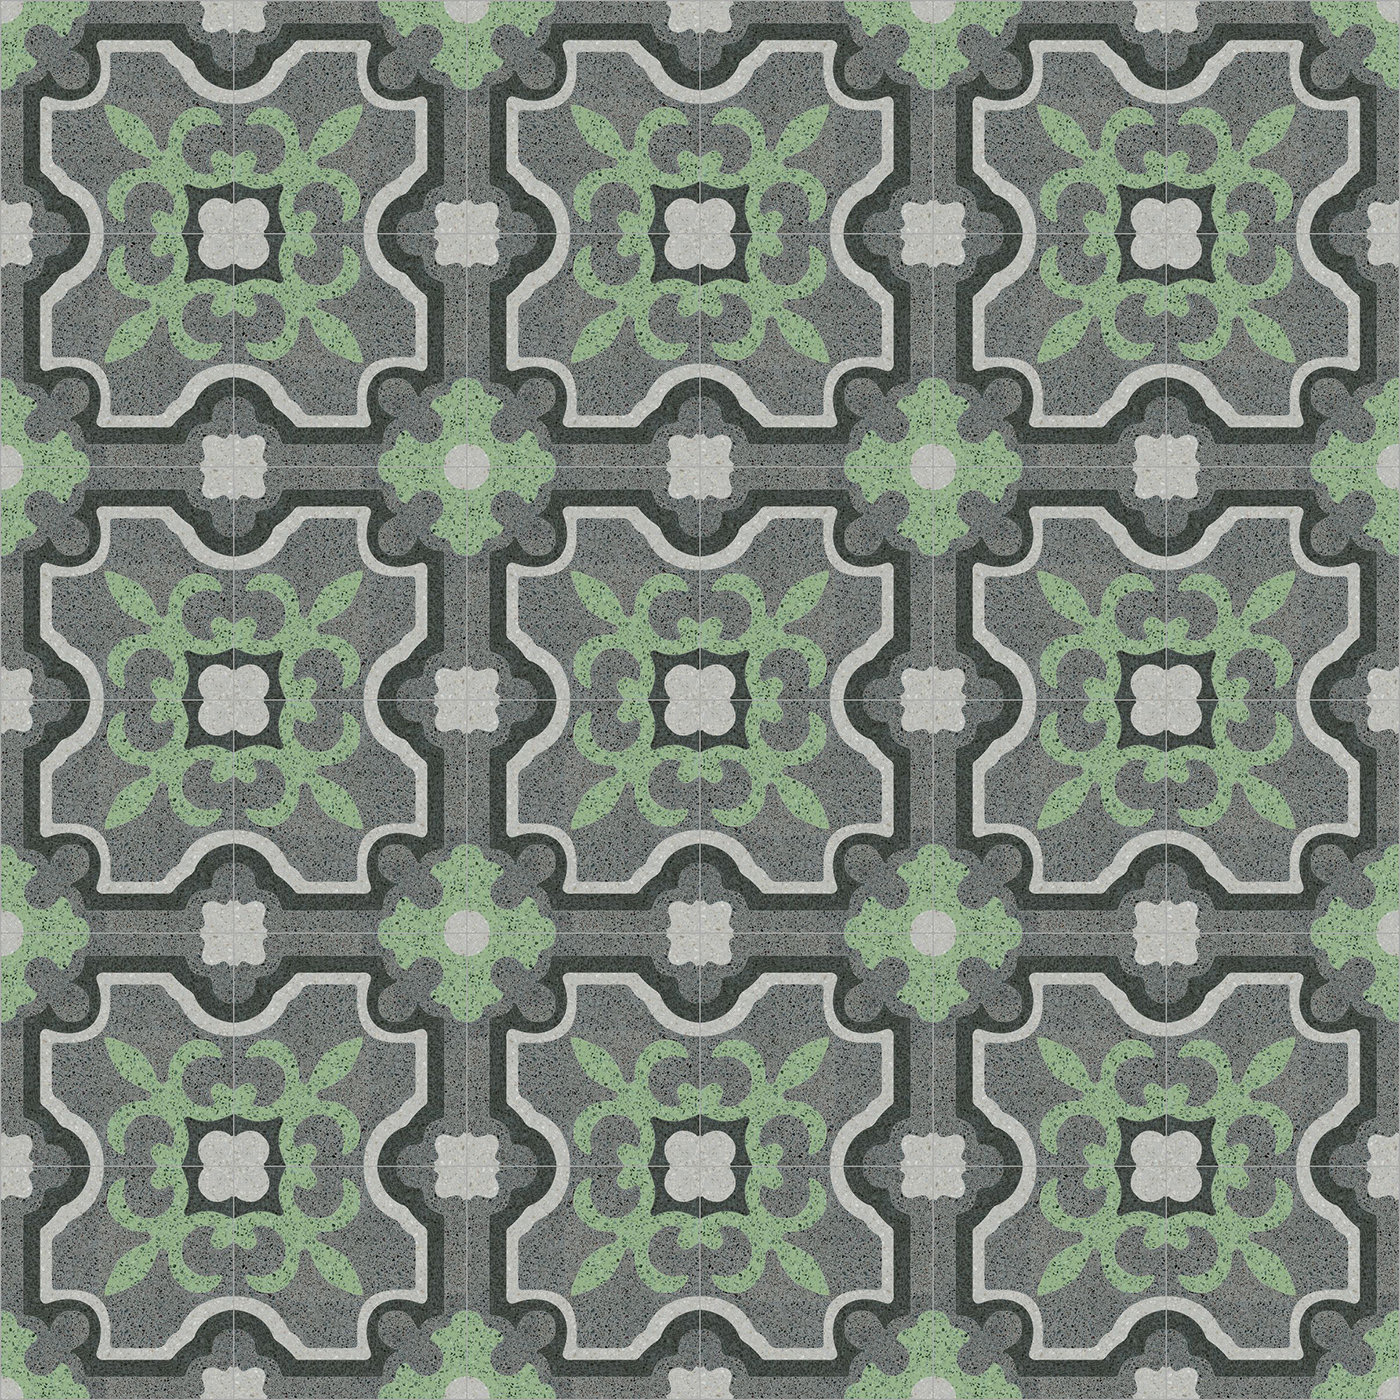 Versus Set of 13 Terrazzo Tiles - Romano